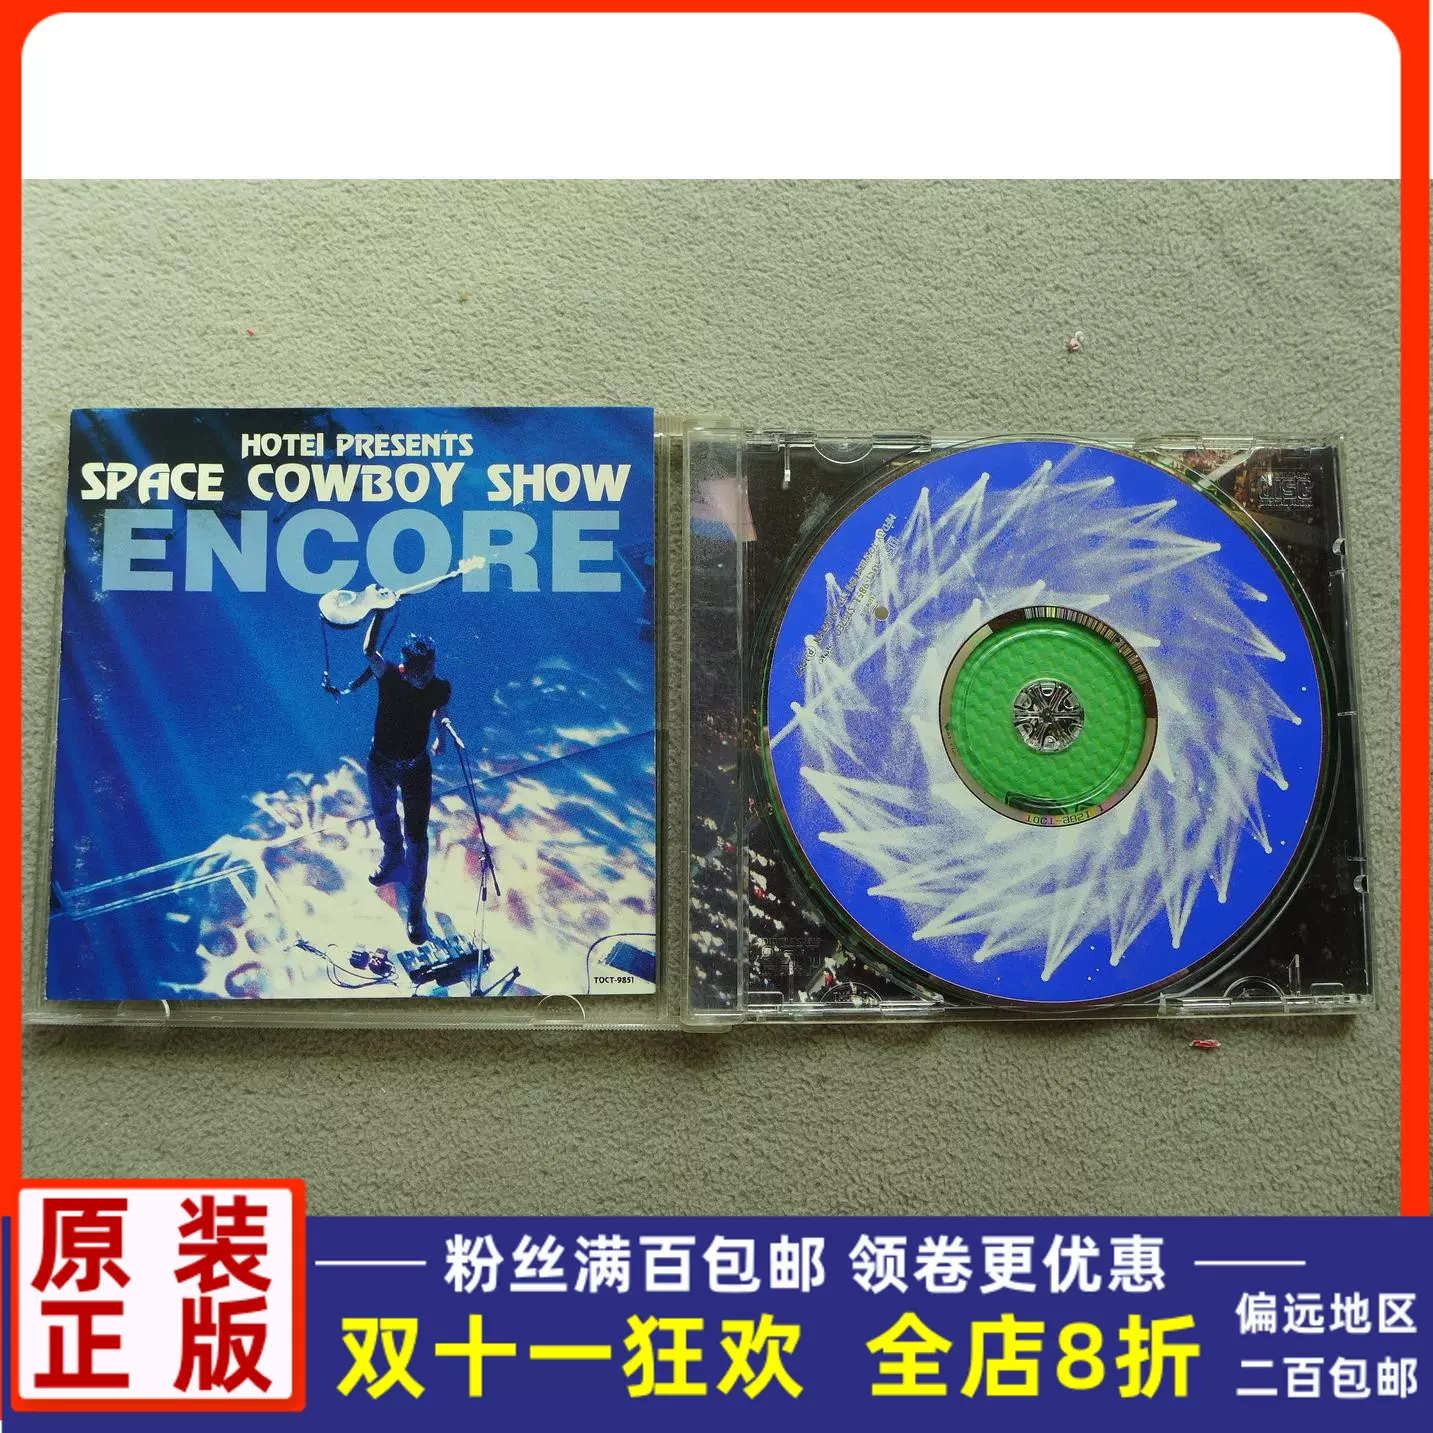 限定DVD】布袋寅泰『ENCORE / SPACE COWBOY SHOW』 - DVD/ブルーレイ